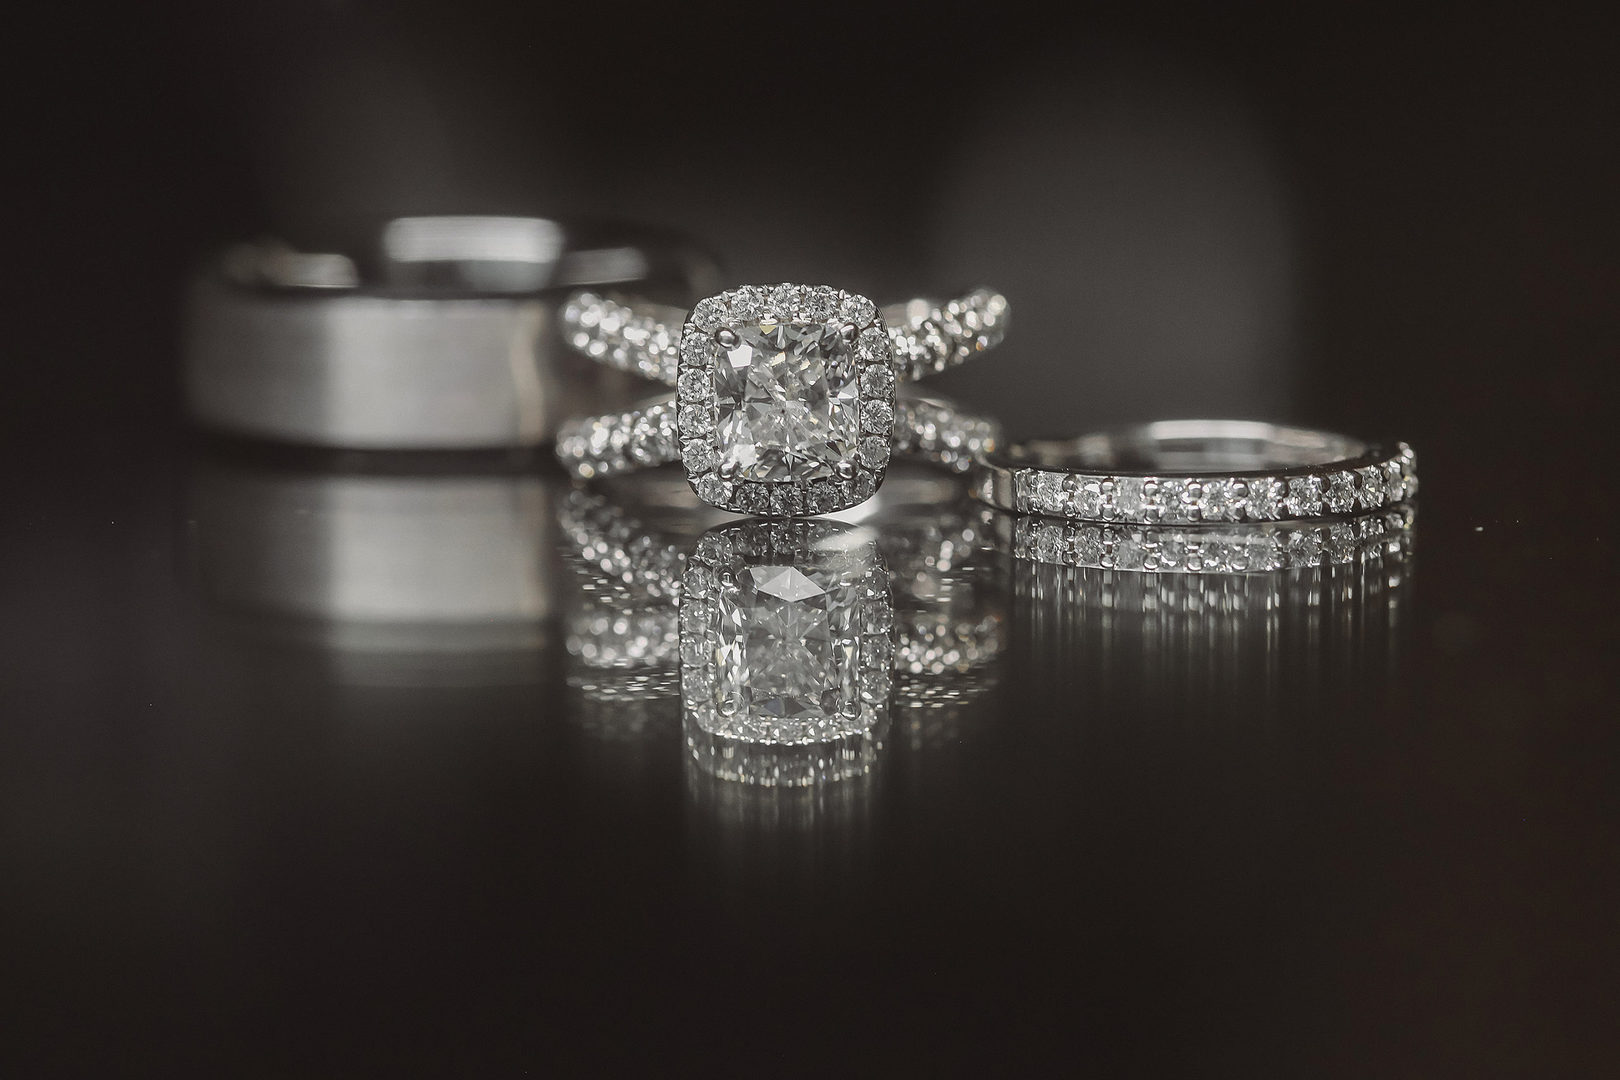 luxury wedding rings in dark lighting